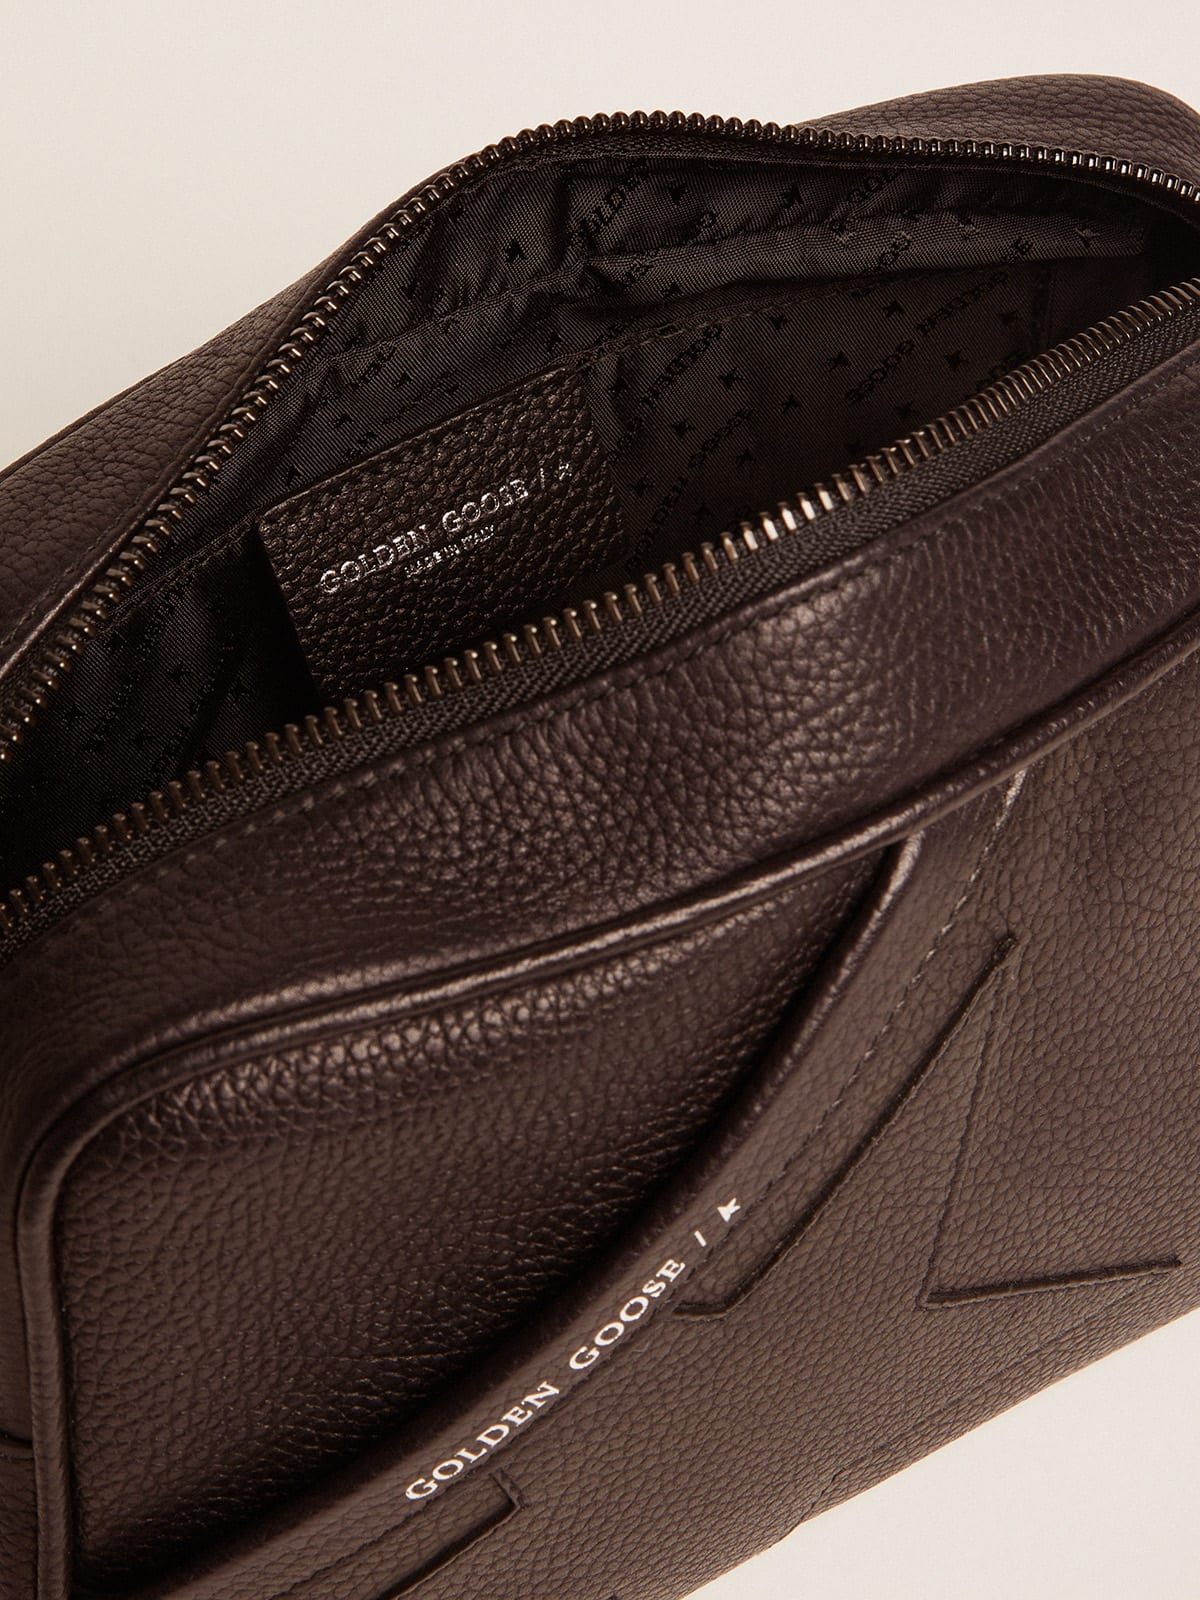 Golden Goose - Black Star Bag made of hammered leather in 